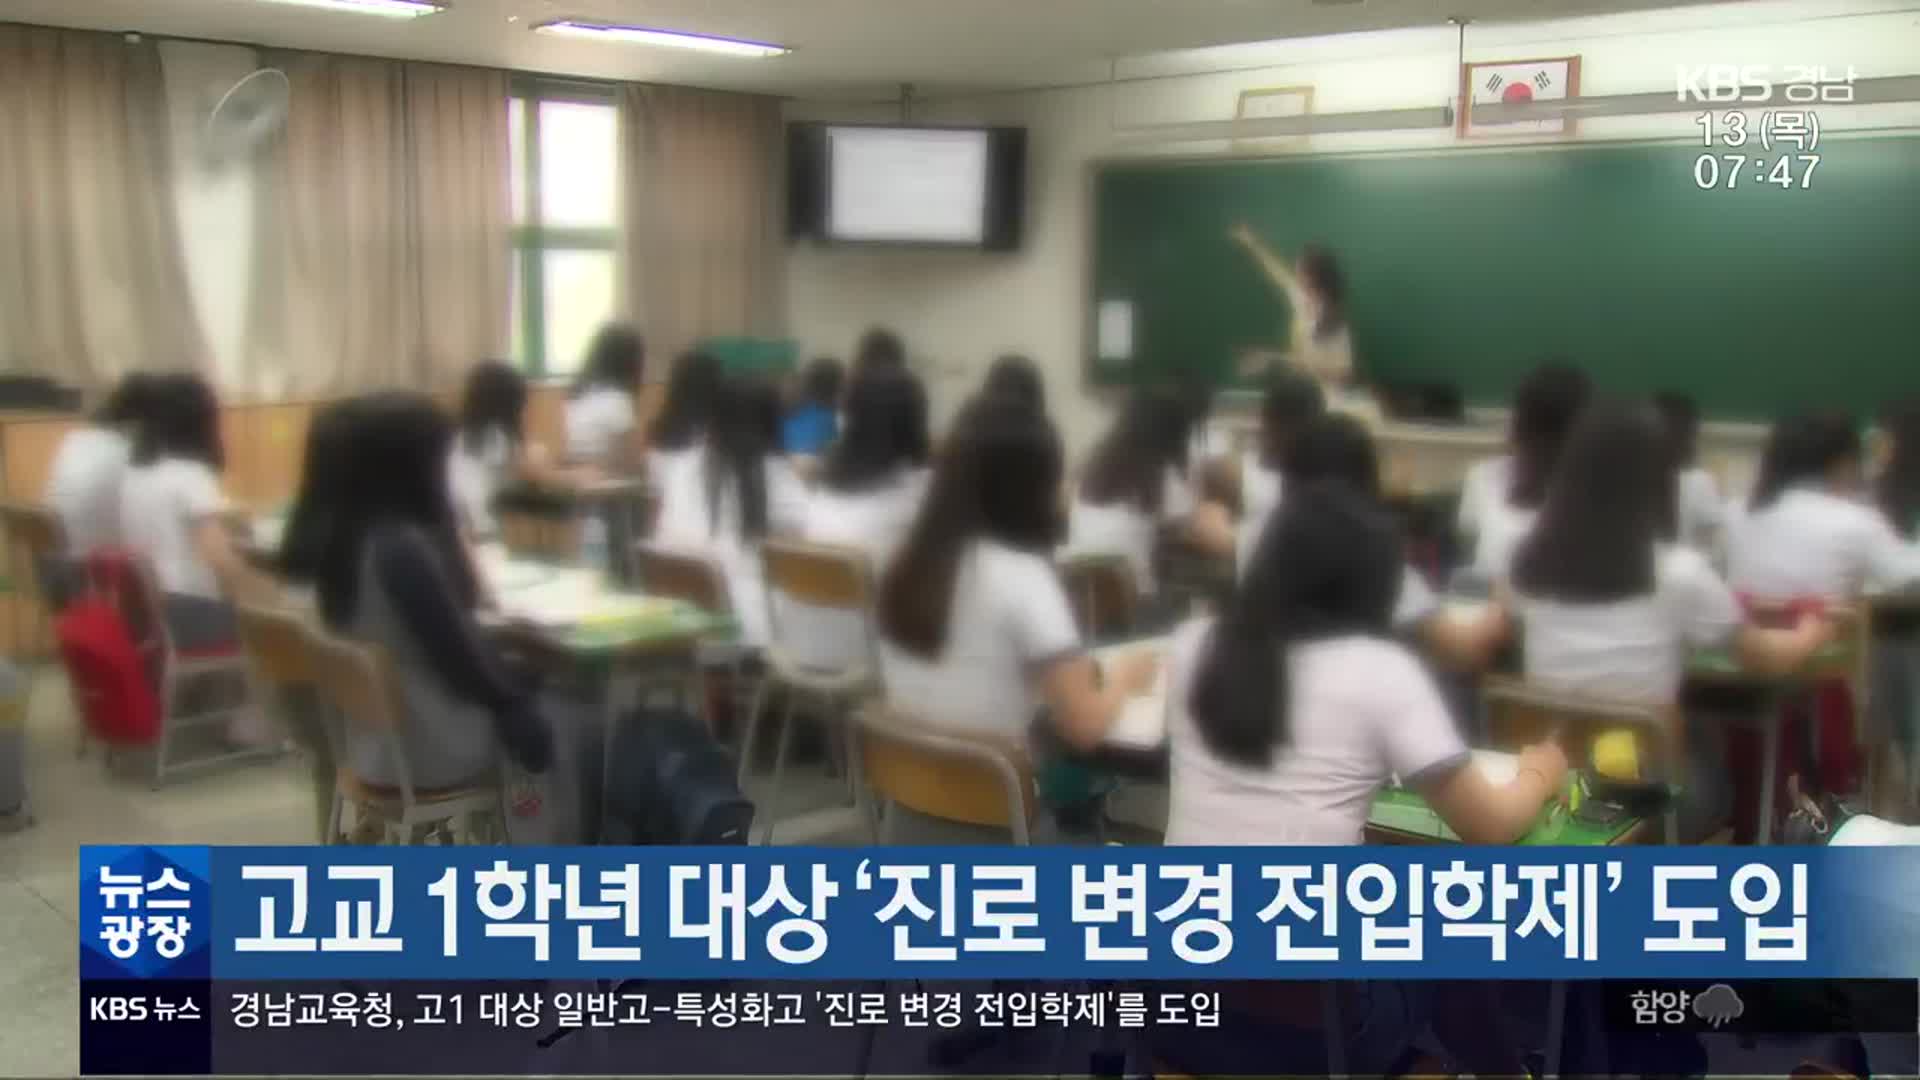 경남교육청, 고교 1학년 대상 ‘진로 변경 전입학제’ 도입